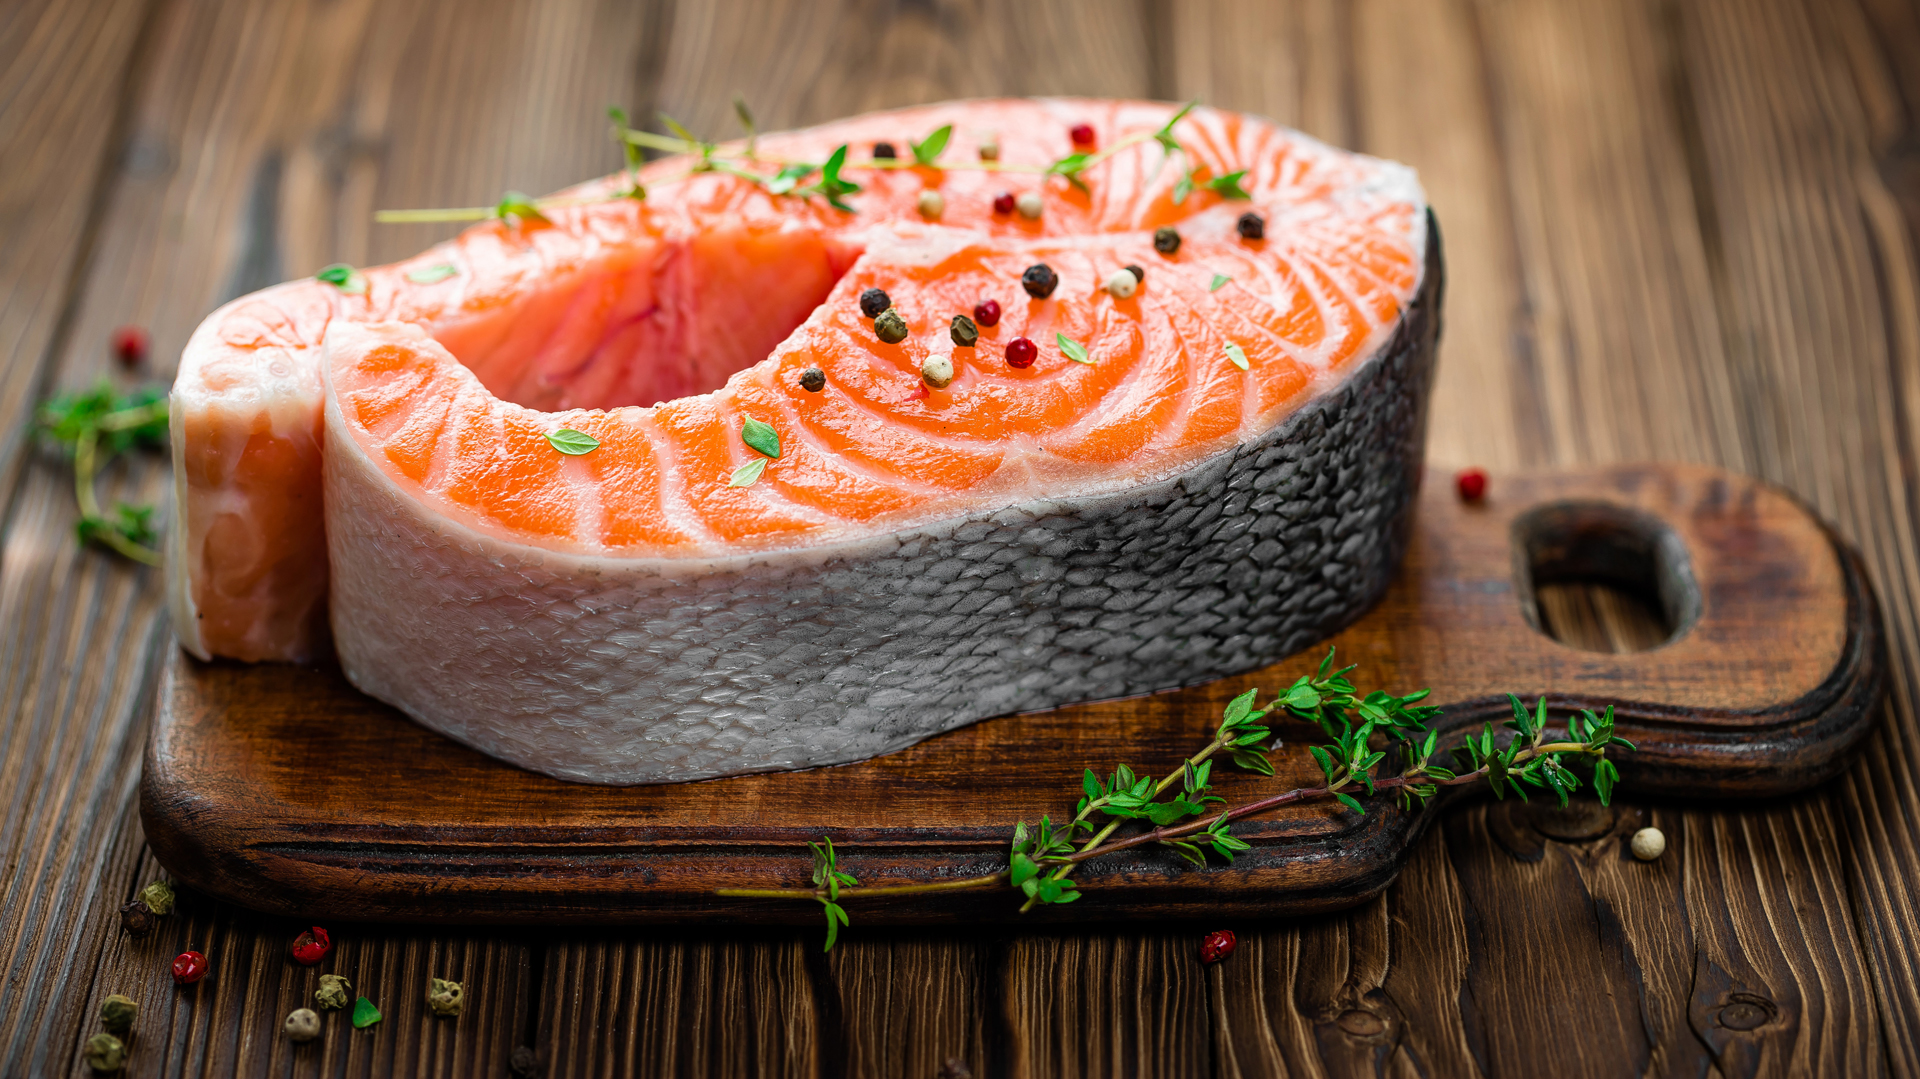 Lo recomendable es elegir platos con salmón, o pescados en general, dos veces por semana como mínimo (iStock)